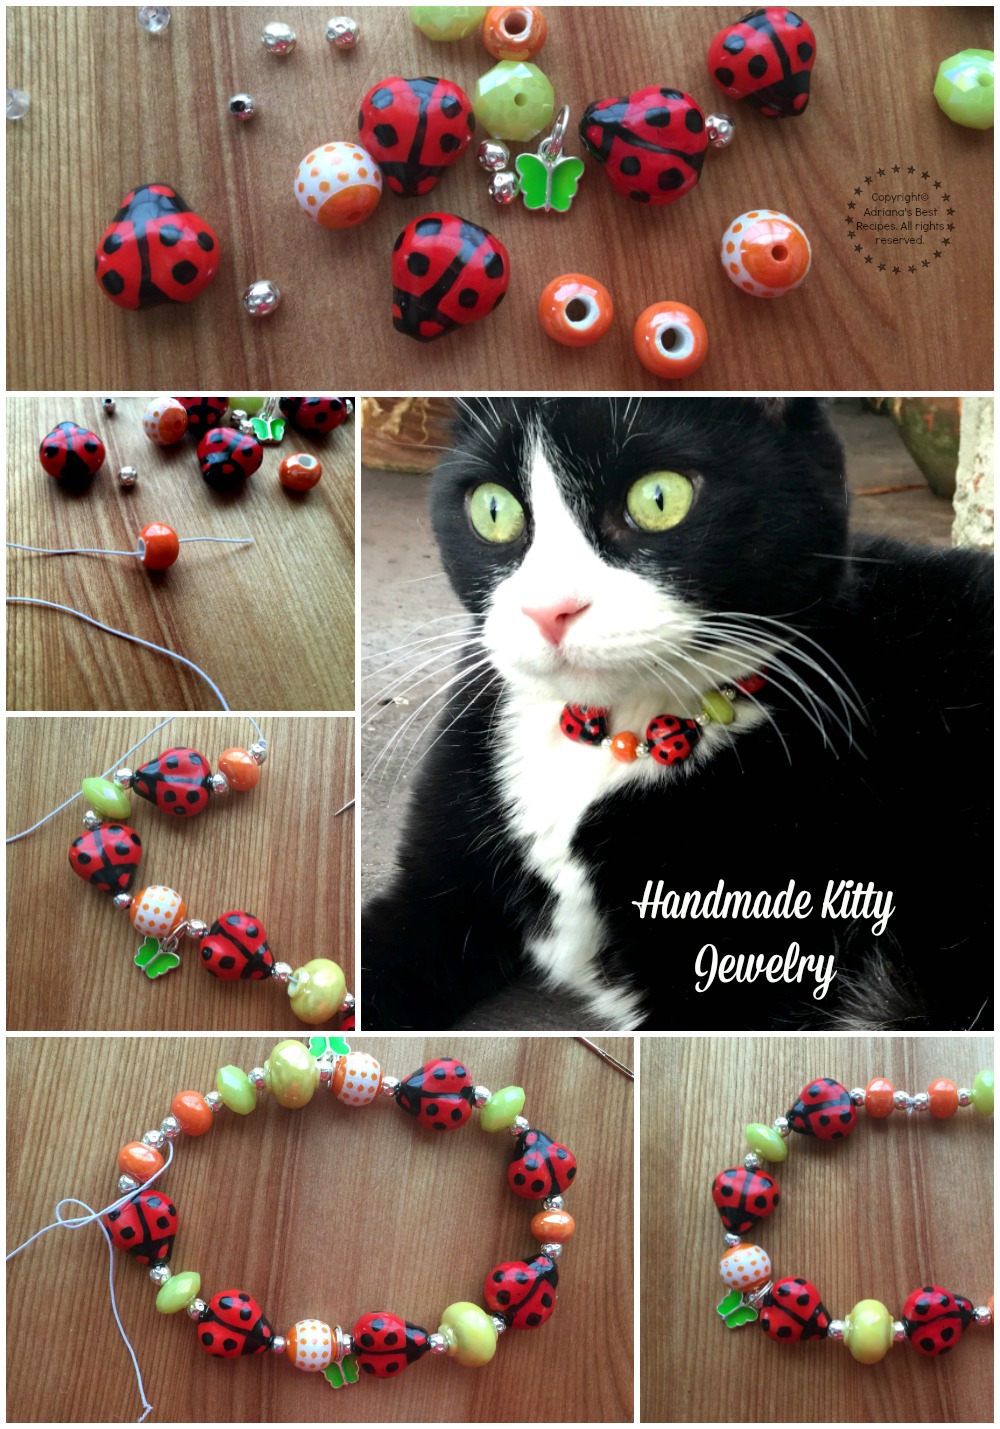 Making Handmade Kitty Jewelry